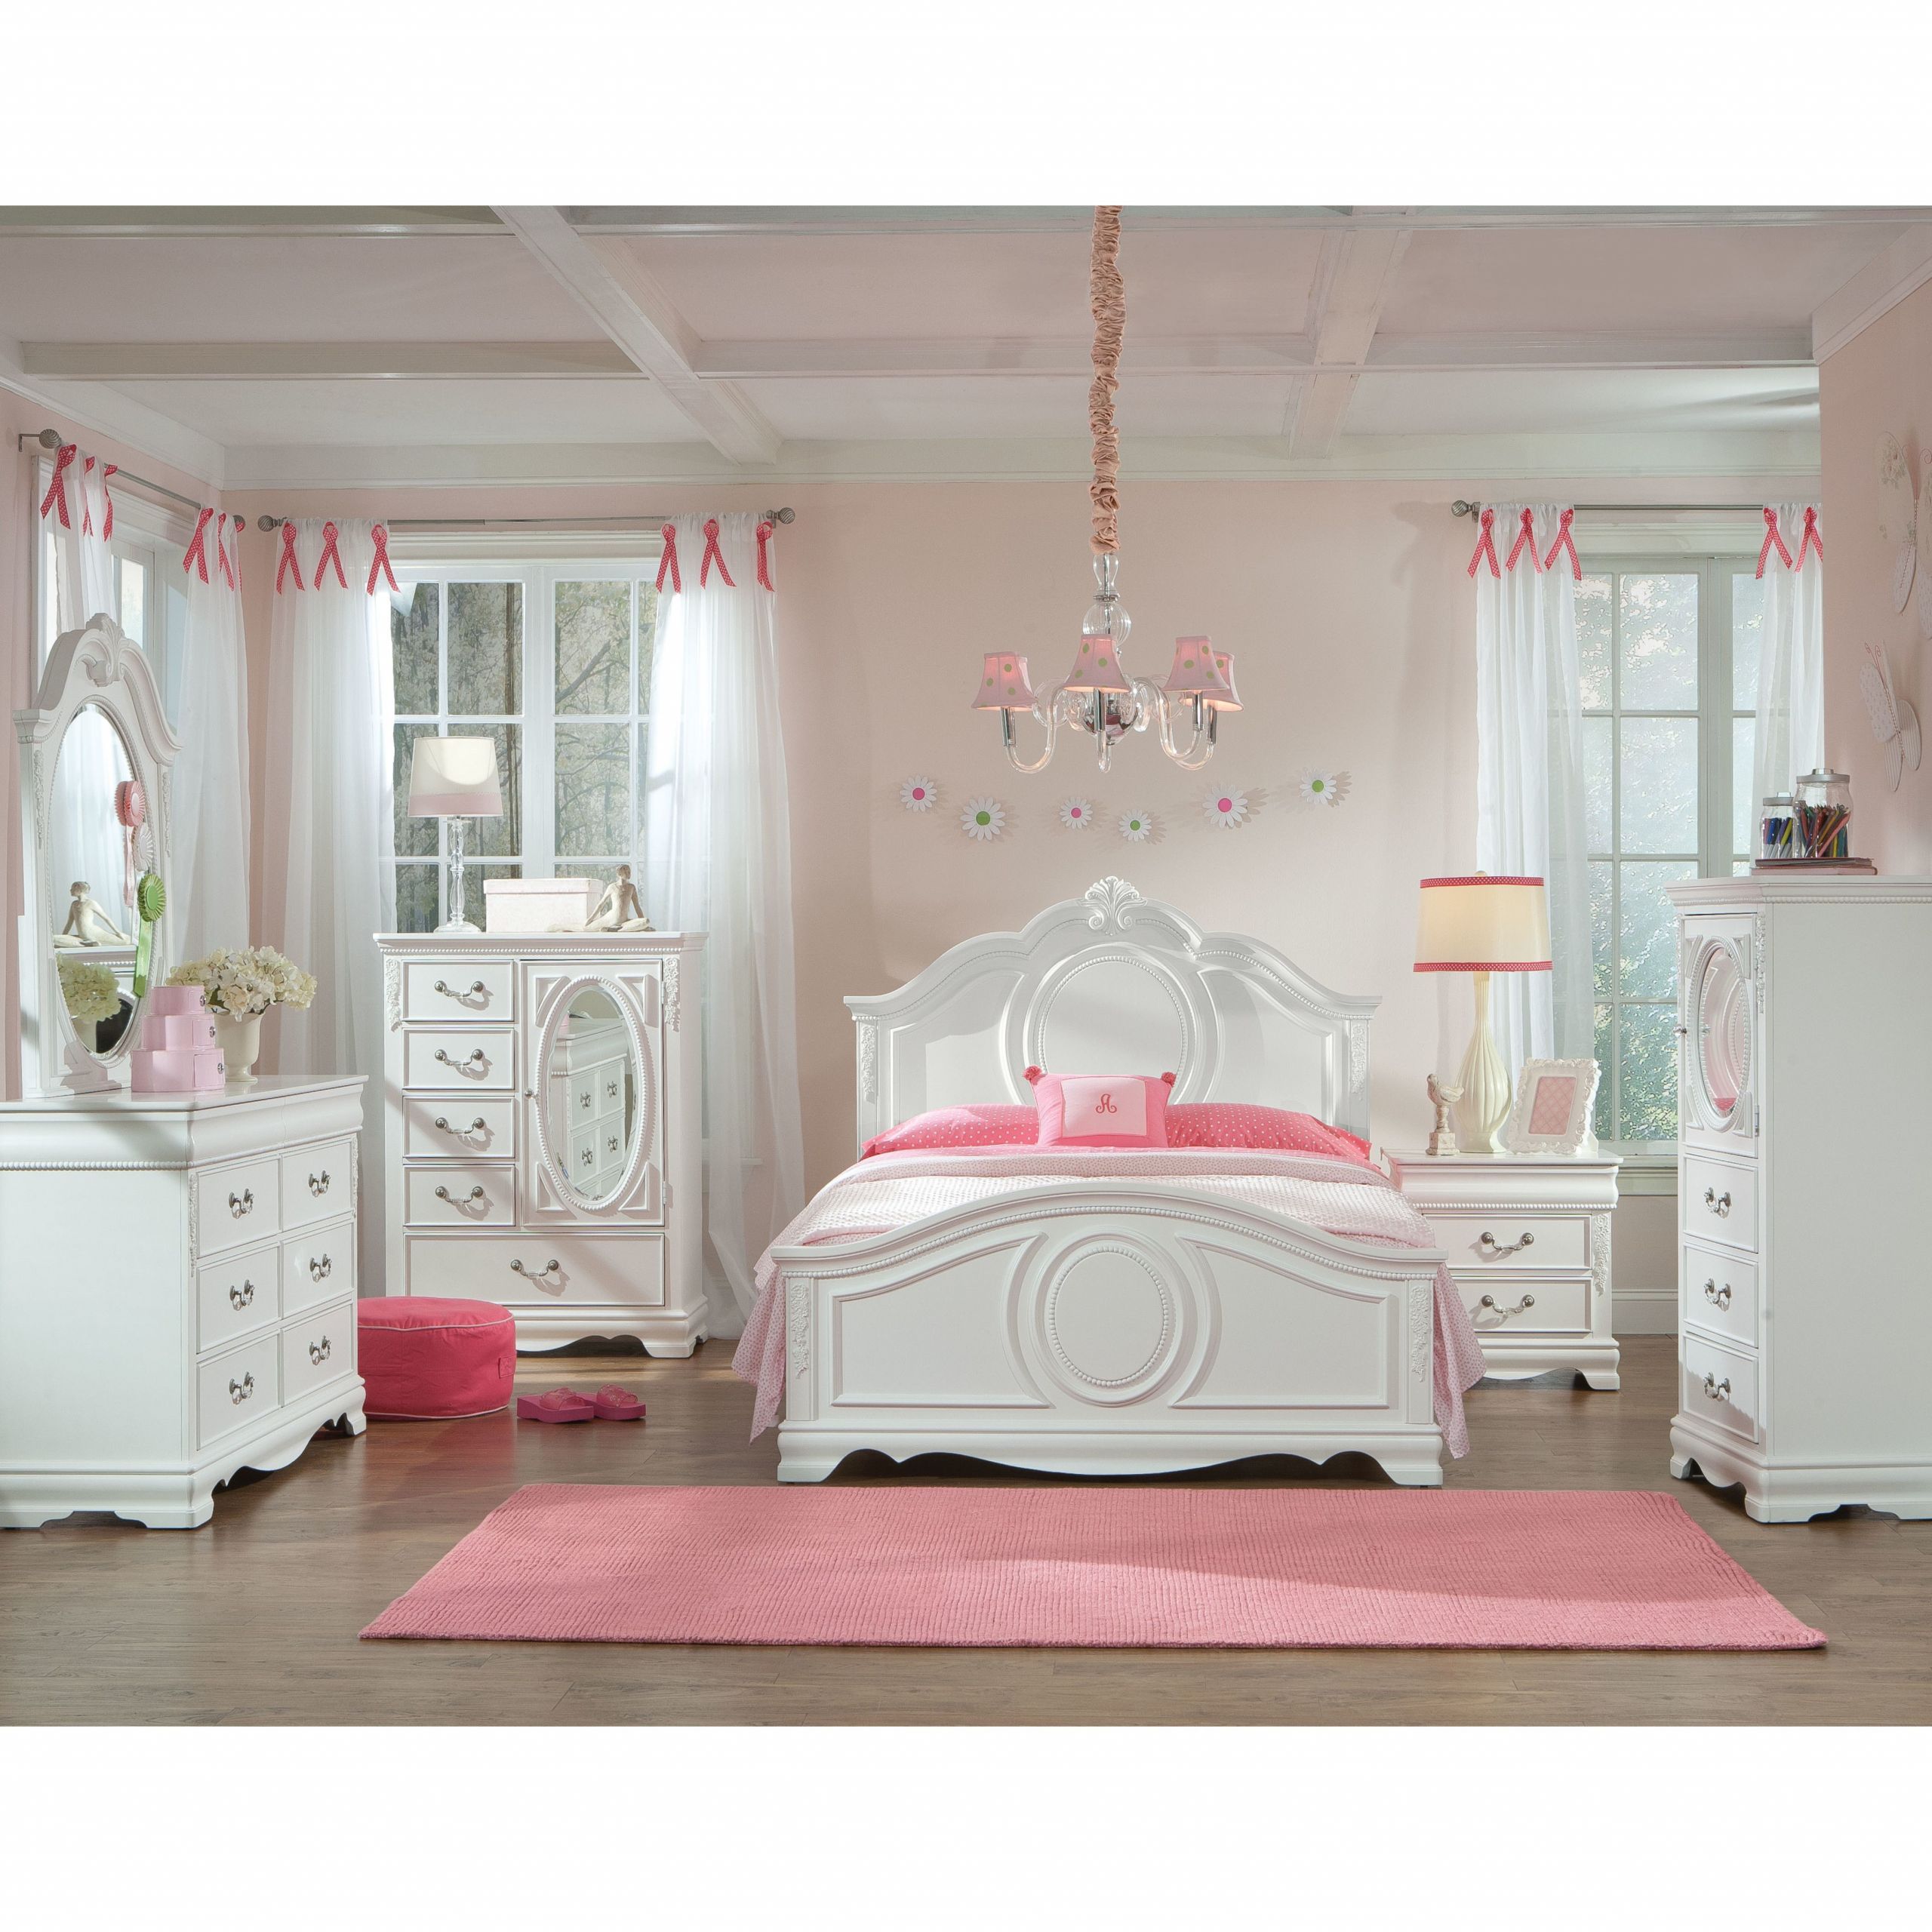 Girls Bedroom Furniture Sets
 Toddler Girl Bedroom Furniture Interior